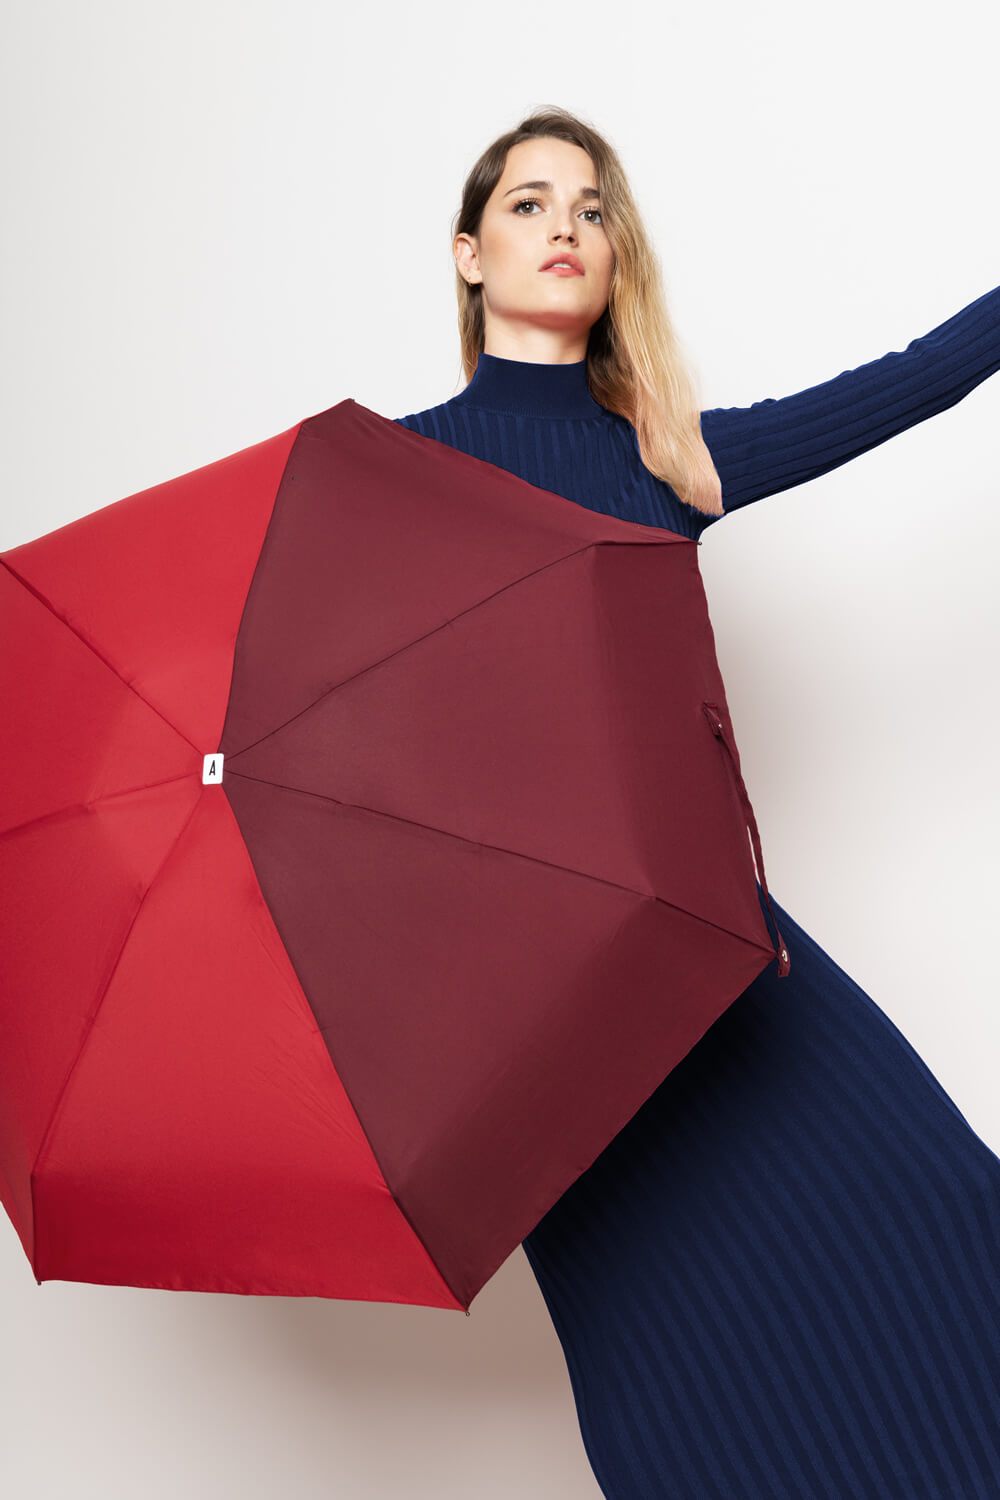 Anatole Paris Regenschirm Regenschirm Bicolor - rot und burgund